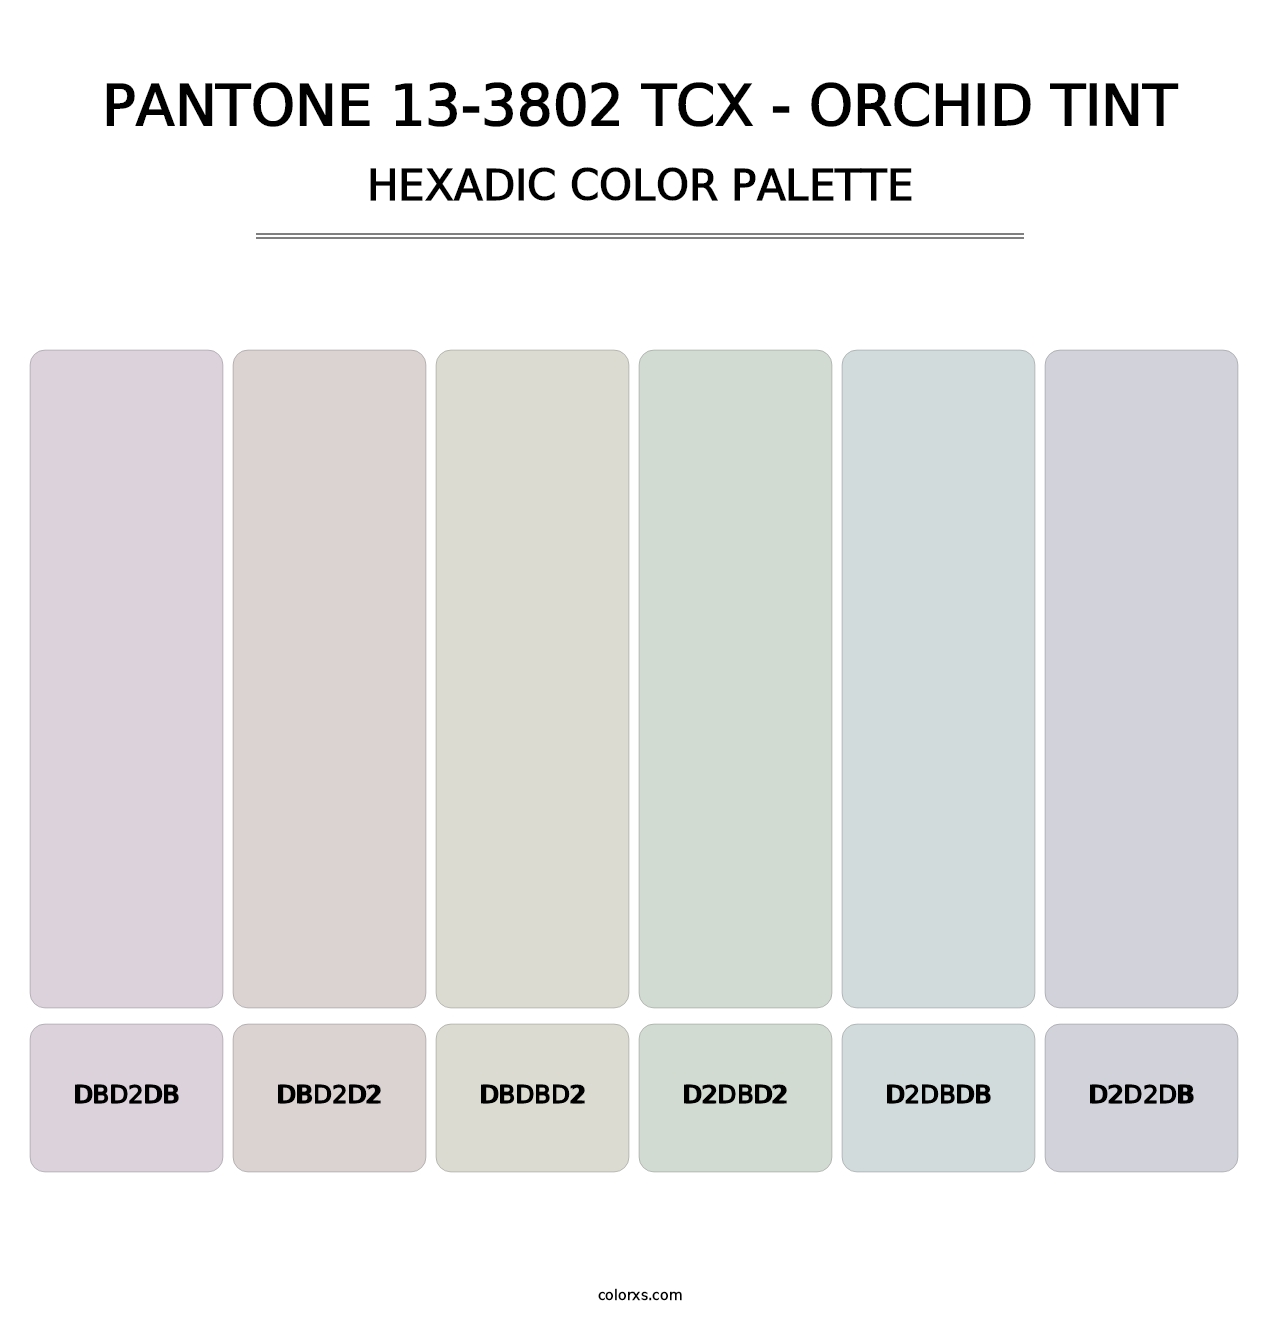 PANTONE 13-3802 TCX - Orchid Tint - Hexadic Color Palette